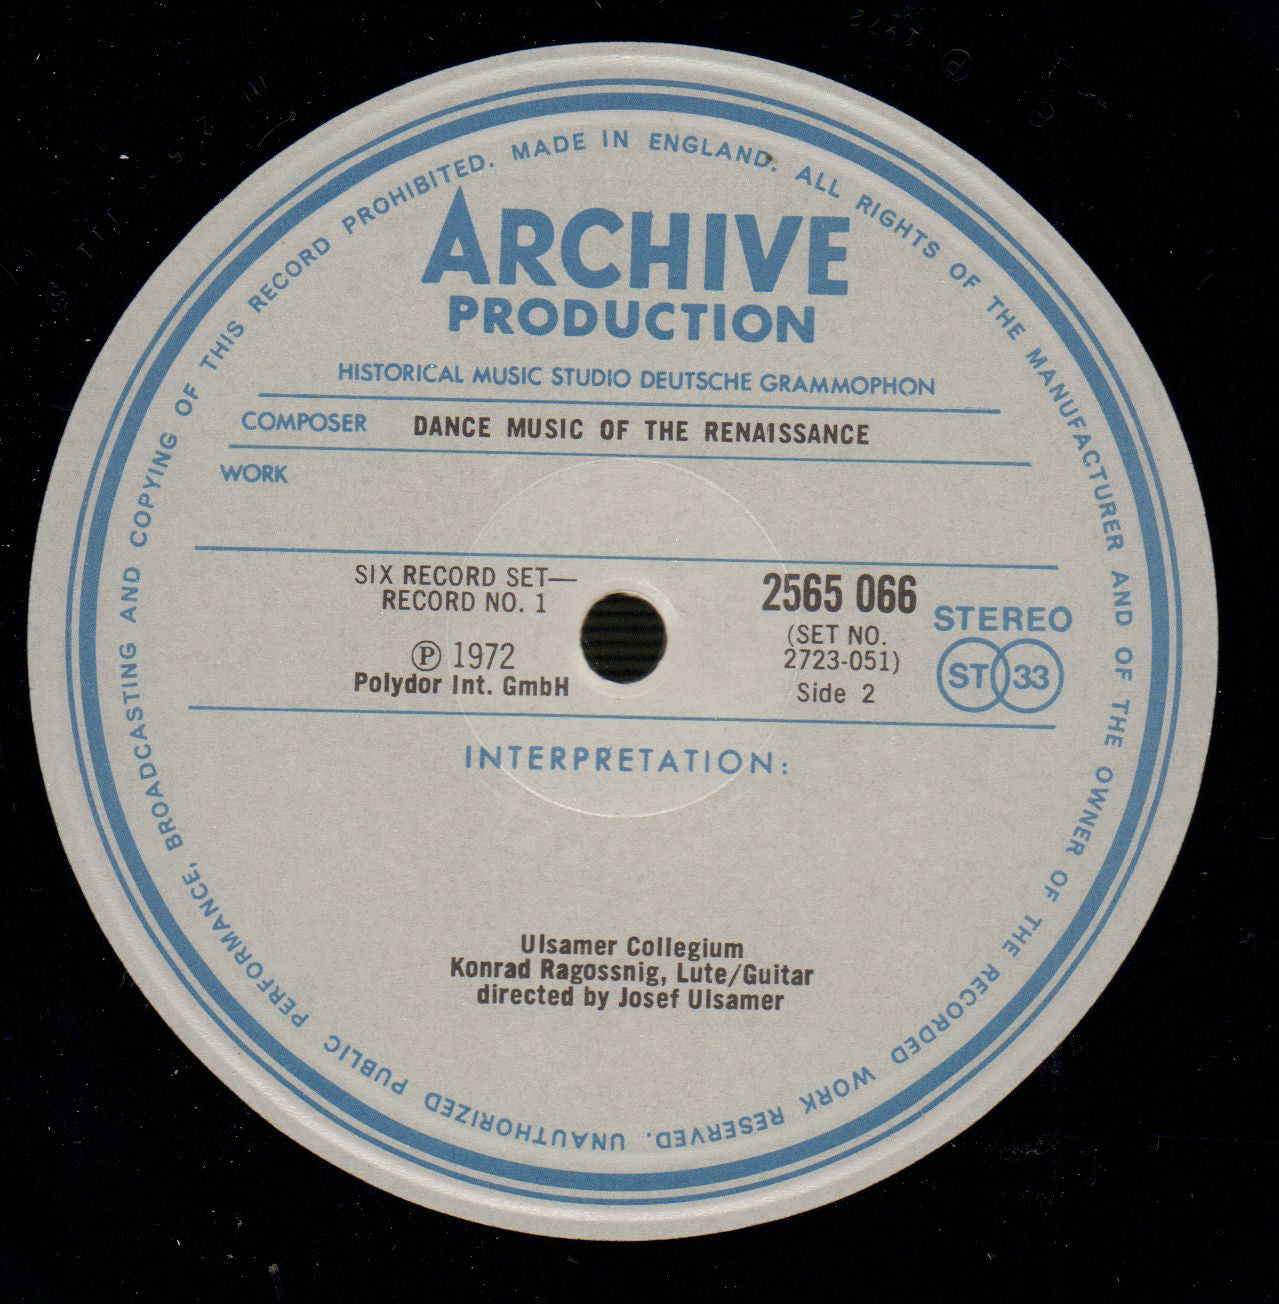 Dance Music trough the ages-Deutsche Grammophon-6x12" Vinyl LP Box Set-NM/M